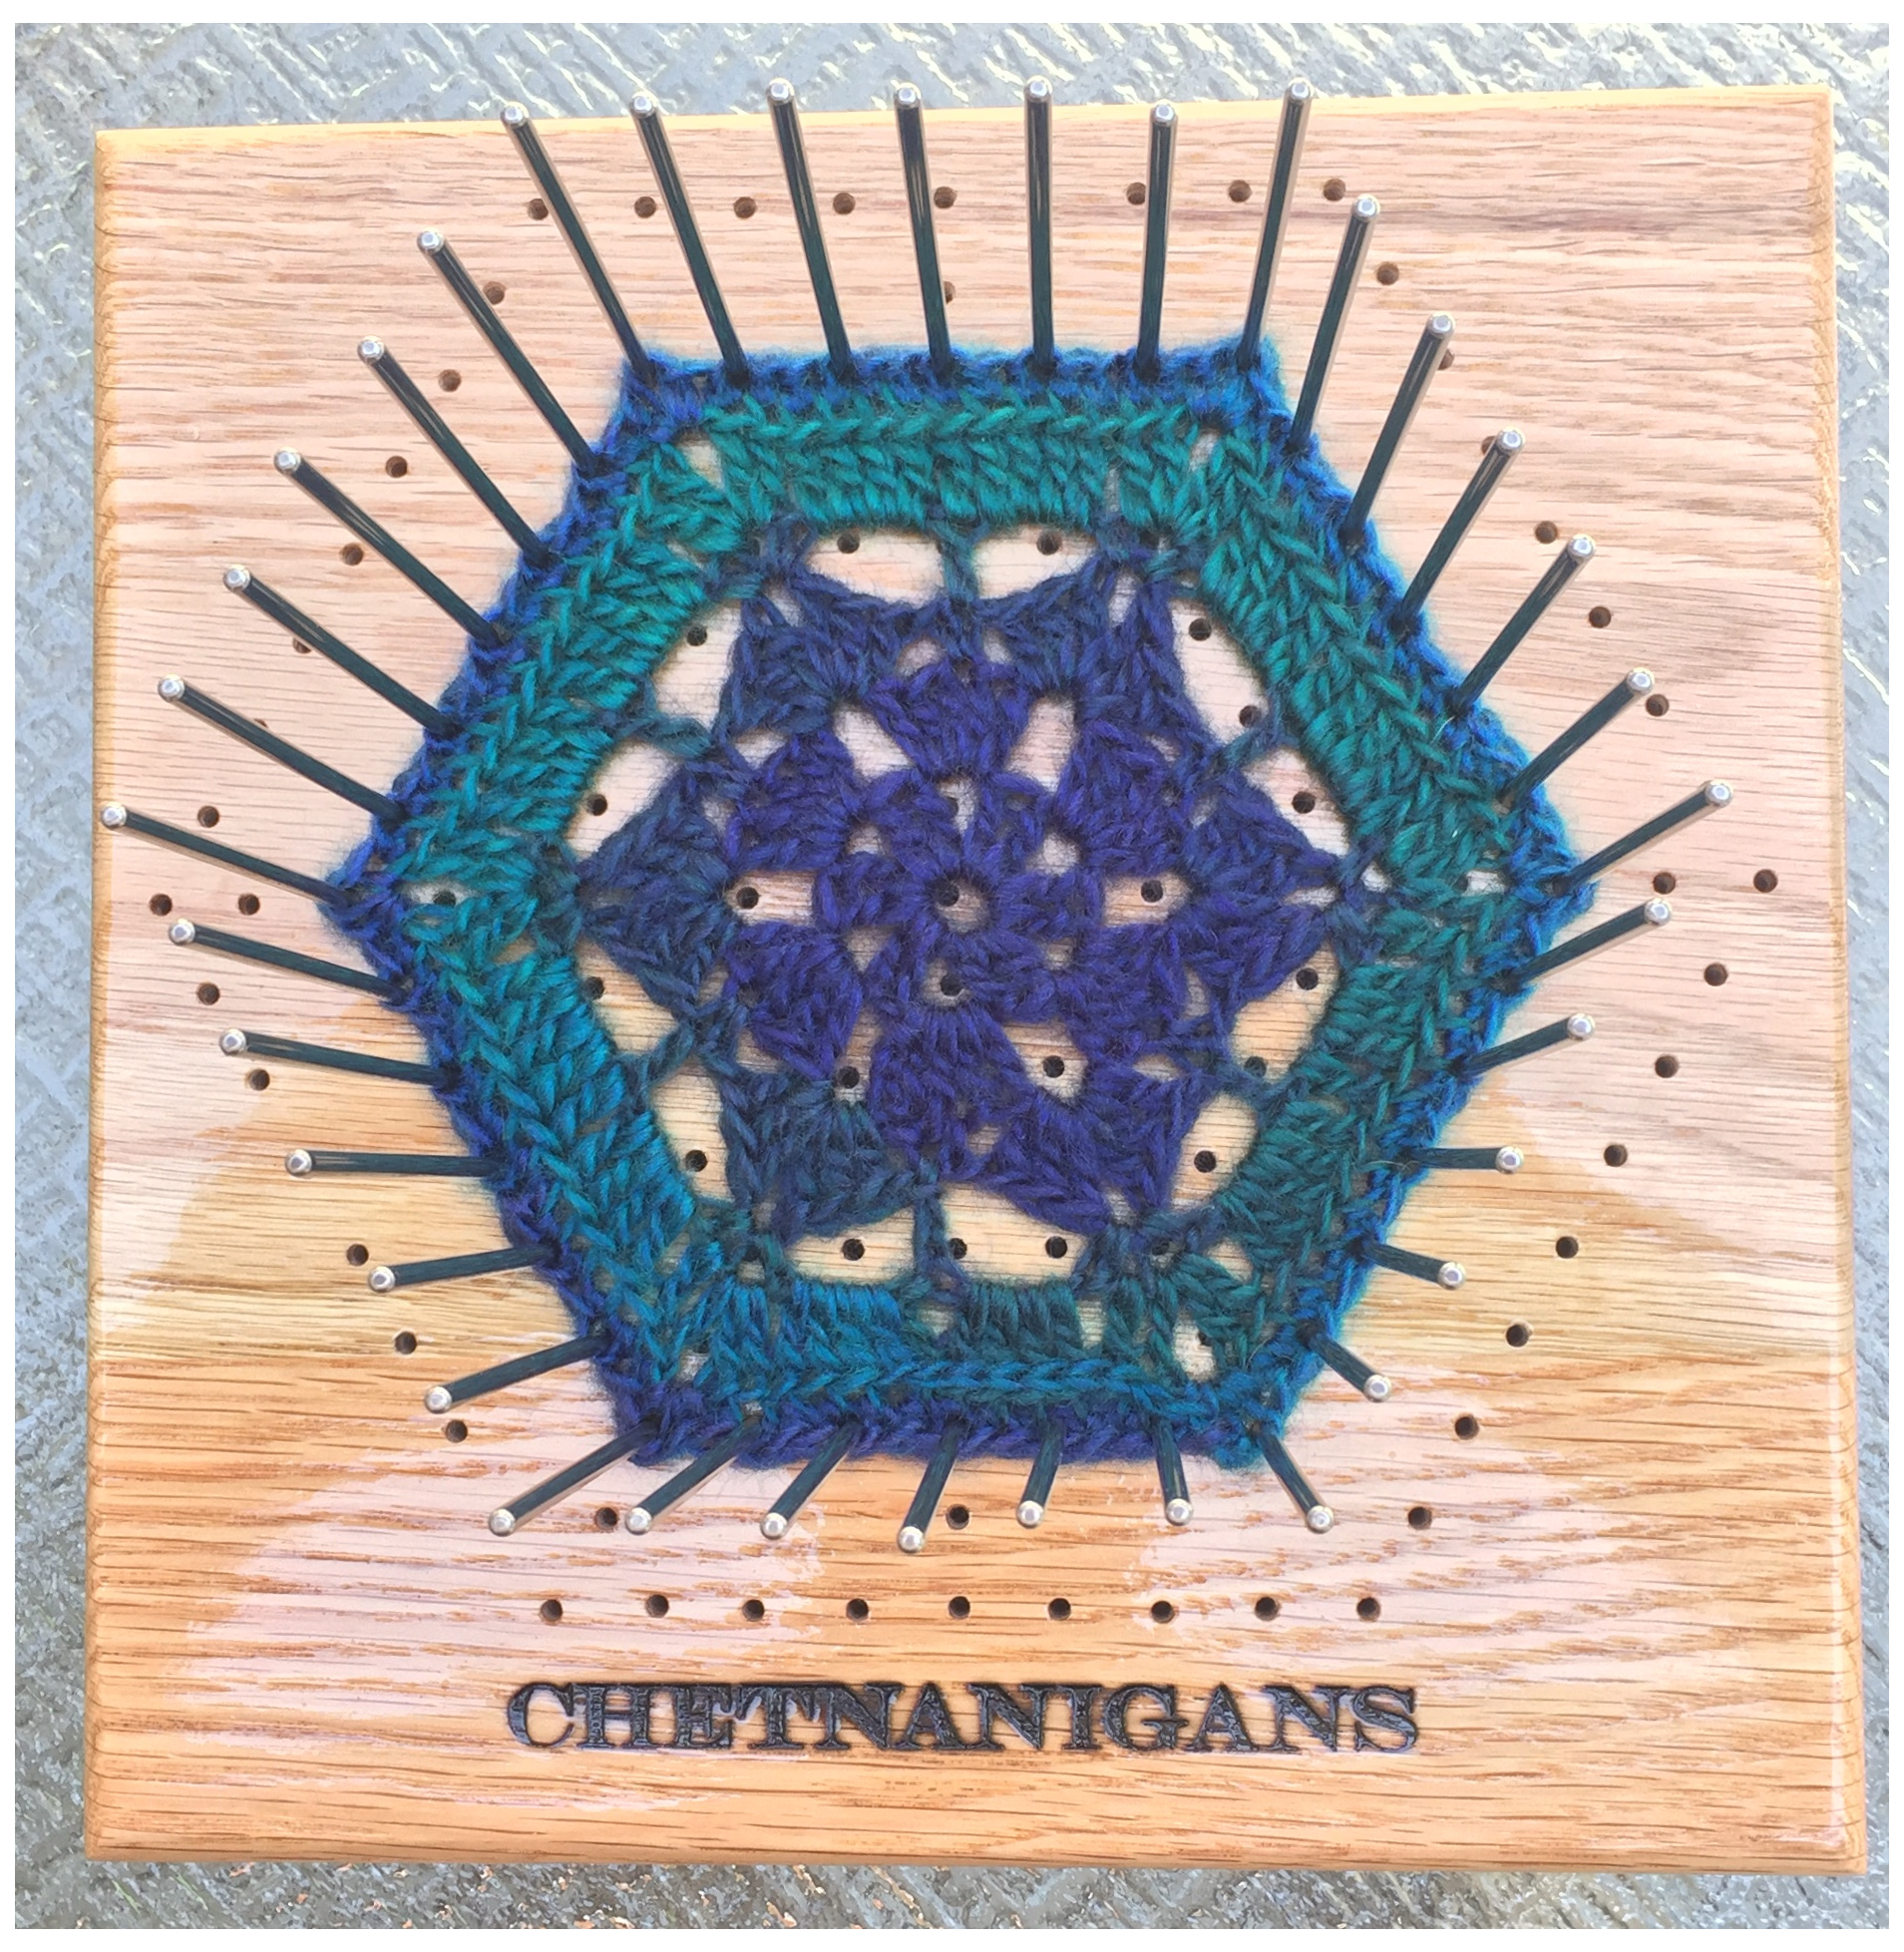 8” Premier BlocksAll Ultra Crochet Blocking Board - Chetnanigans